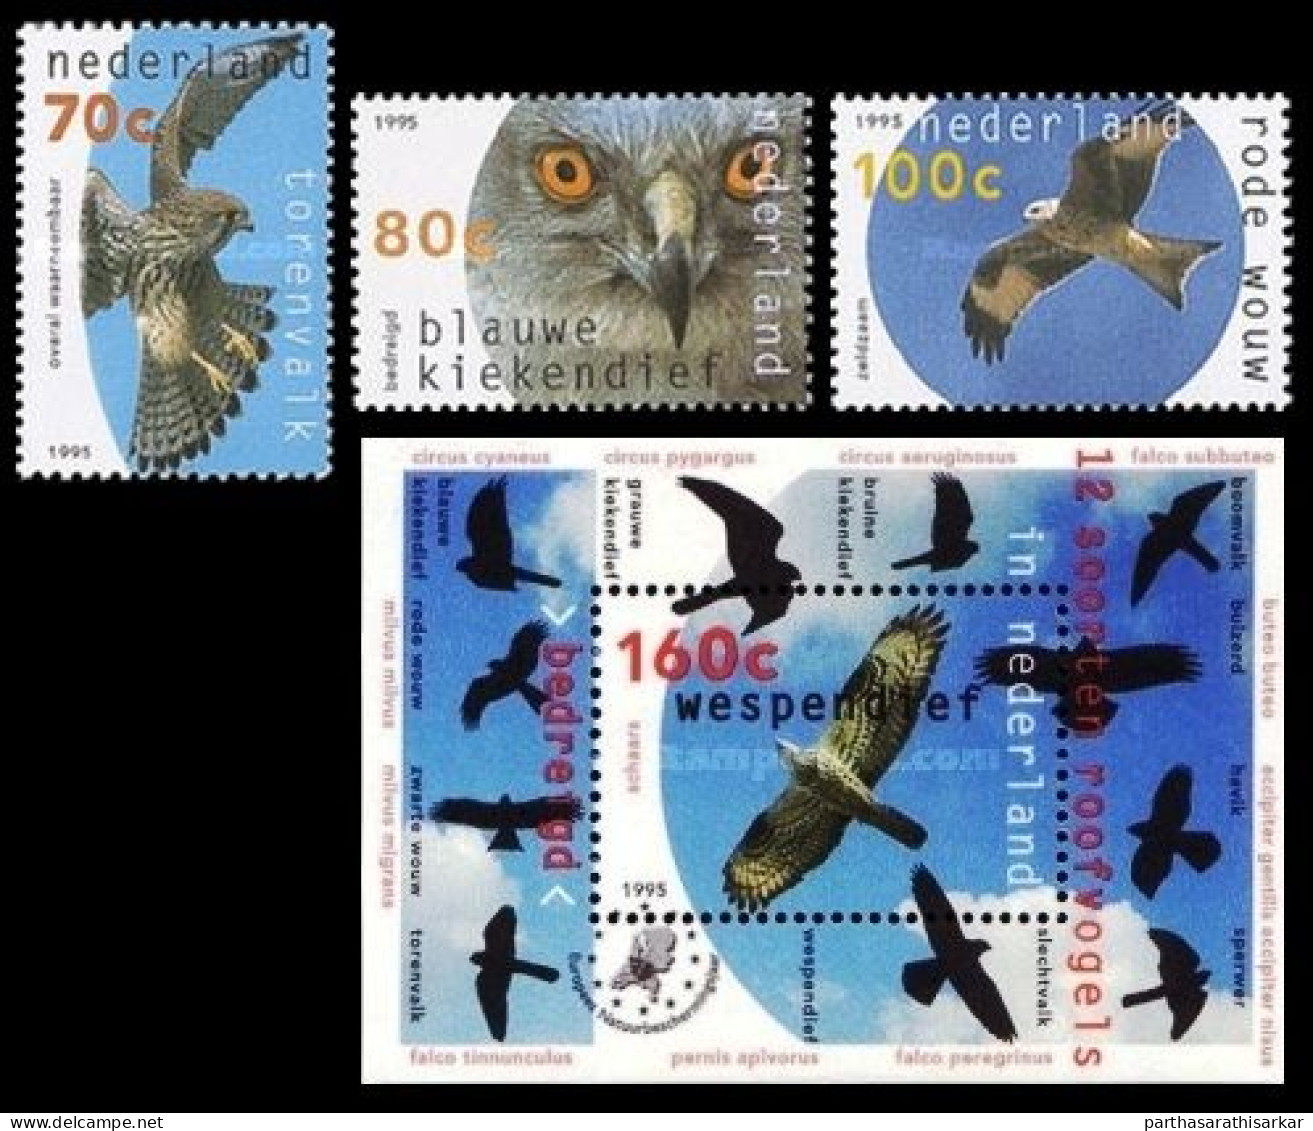 NETHERLANDS 1995 BIRDS OF PREY COMPLETE SET WITH MINIATURE SHEET MS MNH - Adler & Greifvögel